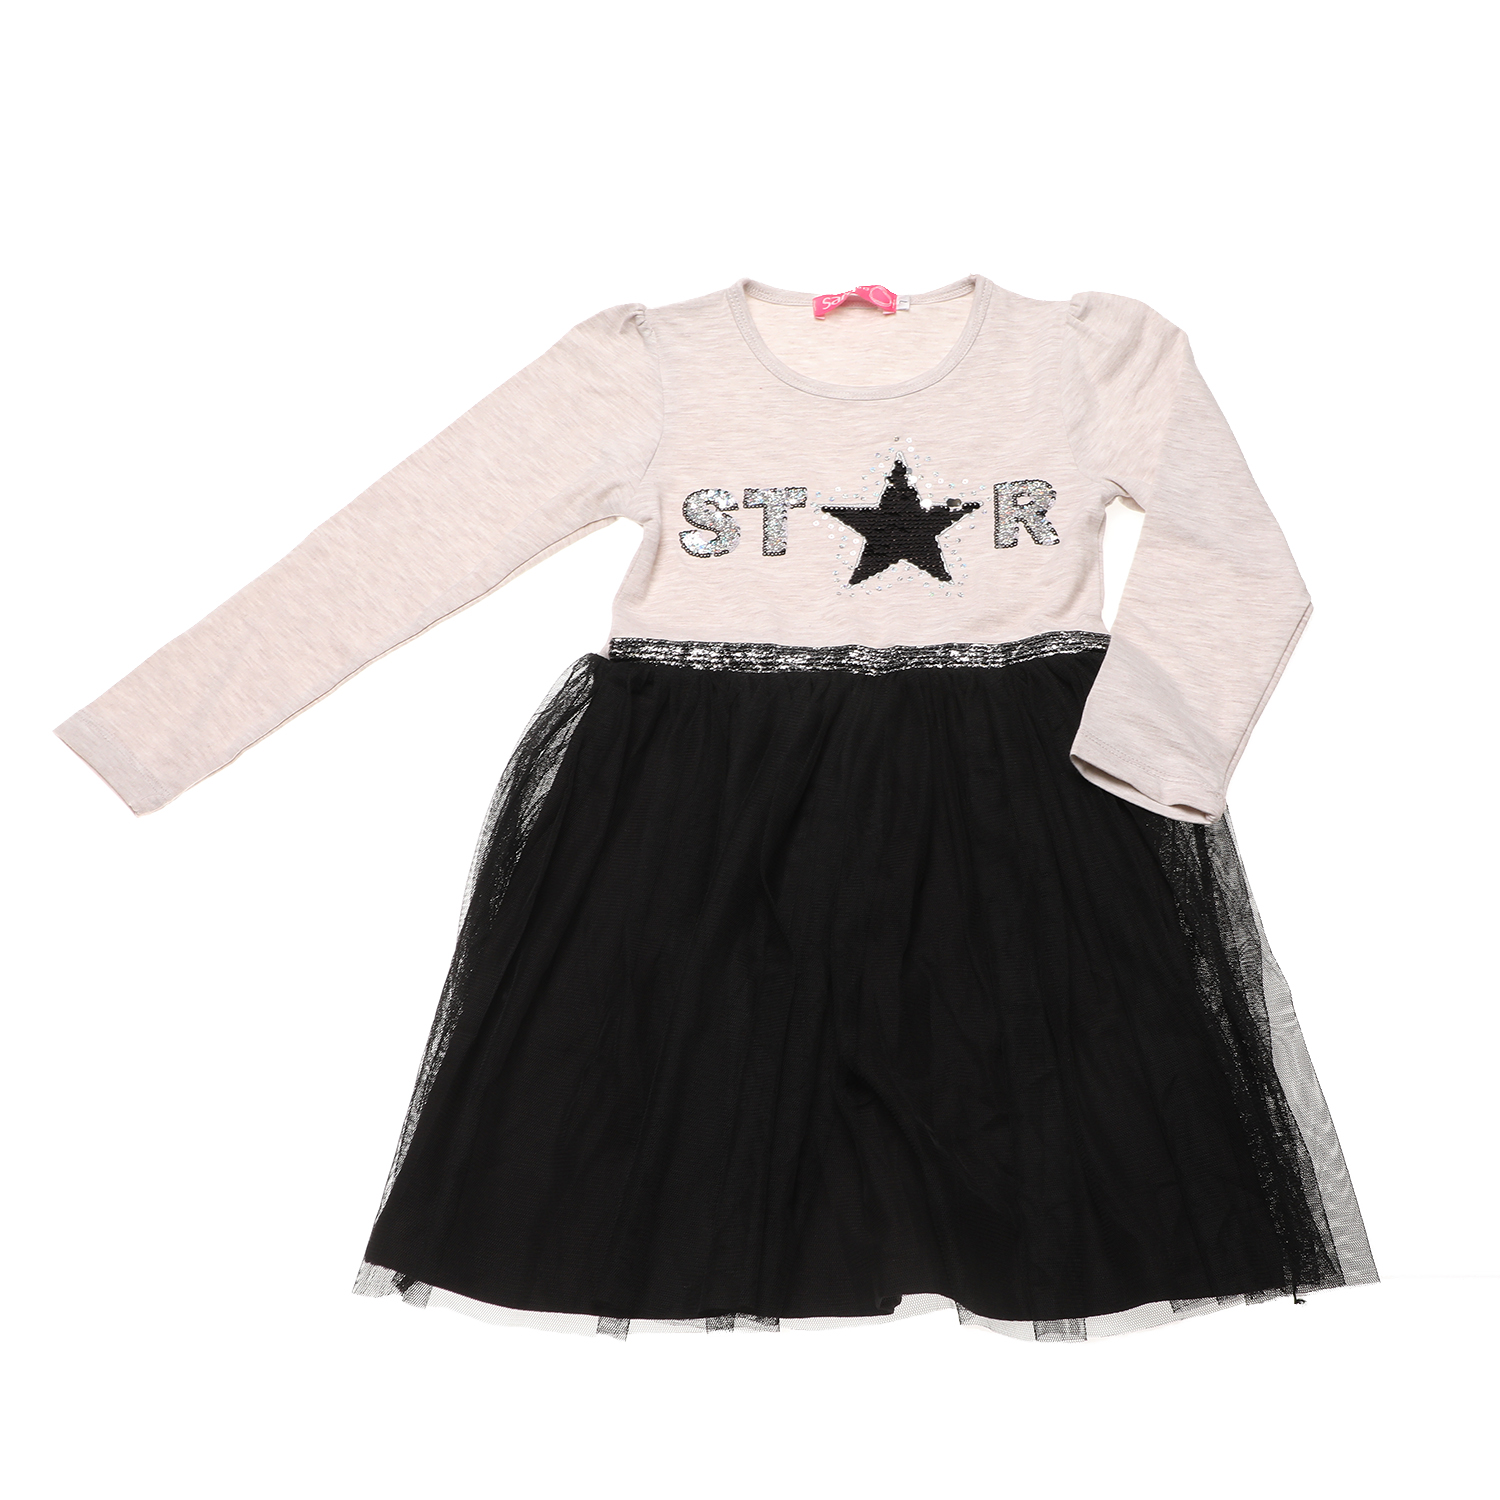 Παιδικά/Girls/Ρούχα/Φορέματα Μακρυμάνικα SAM 0-13 - Παιδικό φόρεμα SAM 0-13 STAR μπεζ μαύρο